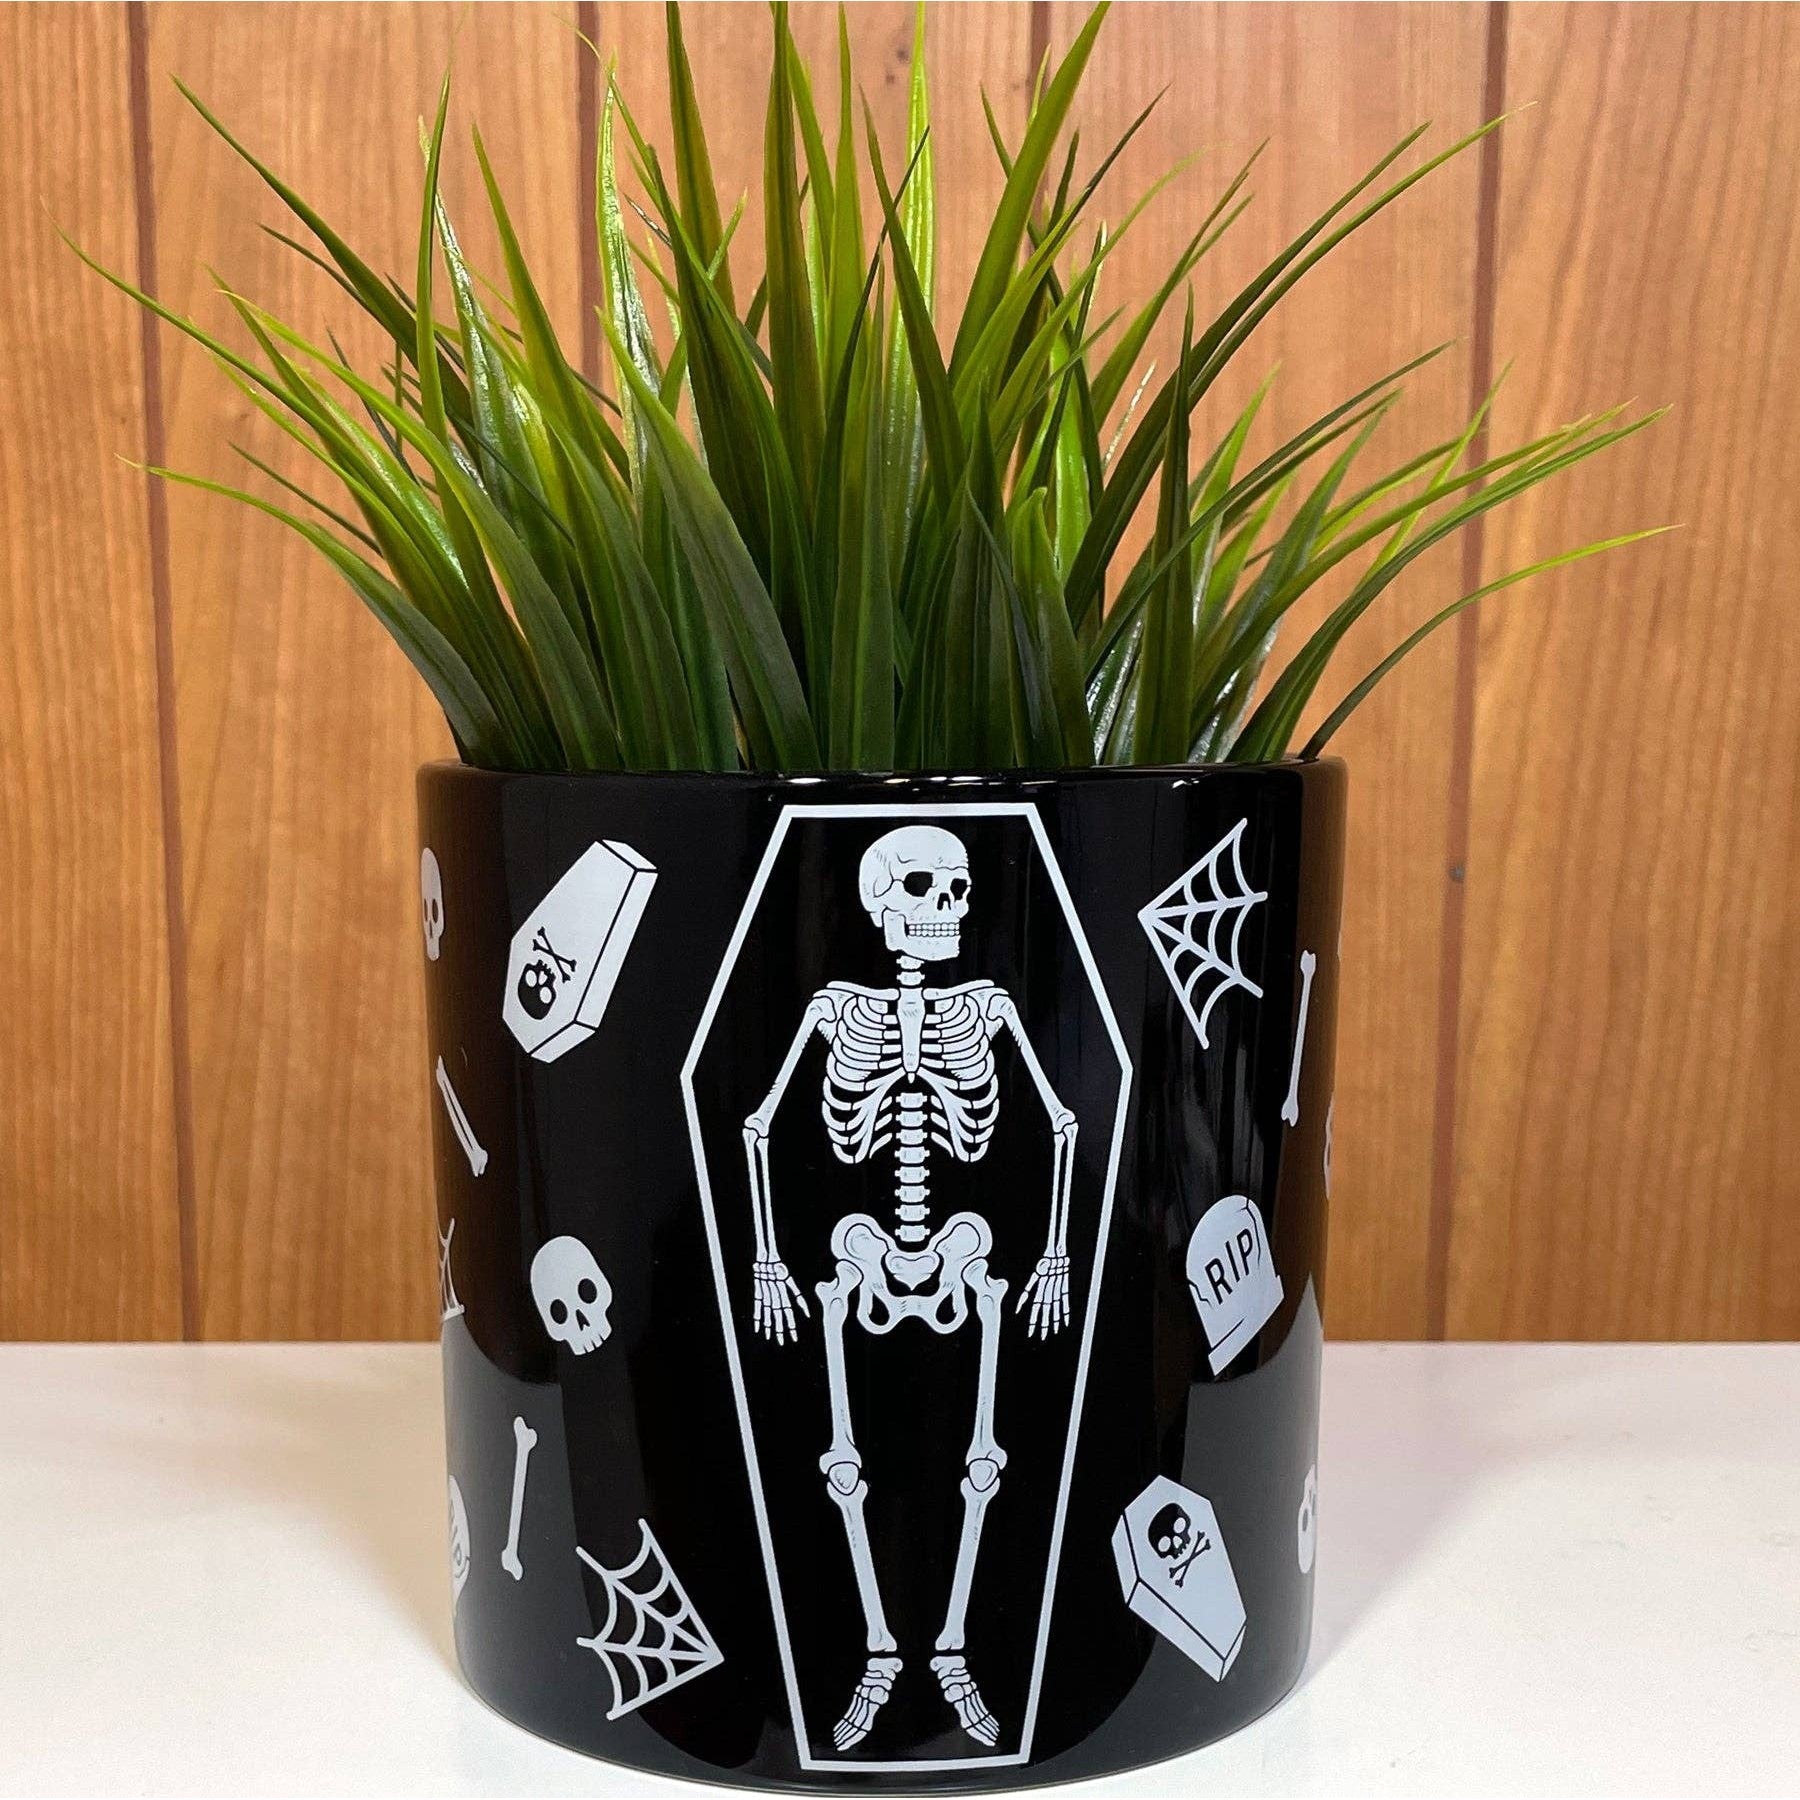 Skeleton Spooky Ceramic Plant Container | Flower Succulents Planter Pot